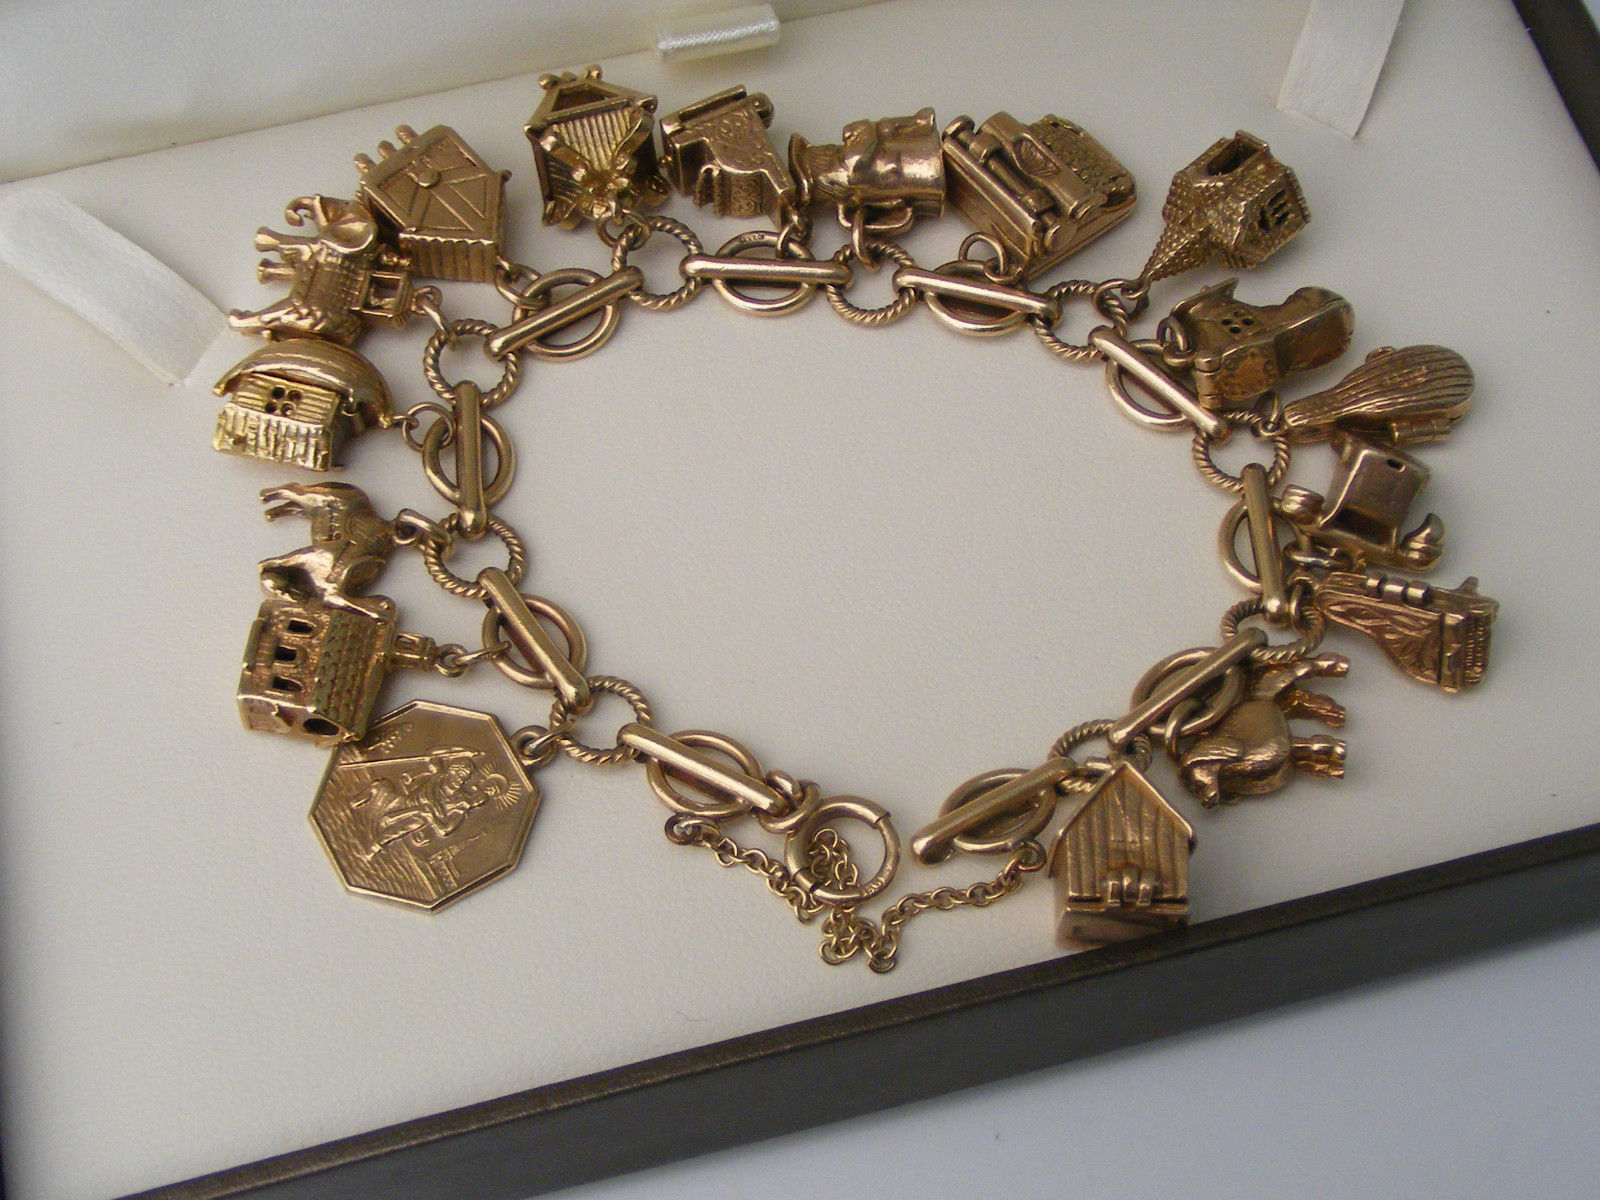 Bracelets à breloques : découvrez 5 des modèles les plus chers récemment vendus sur eBay ! 